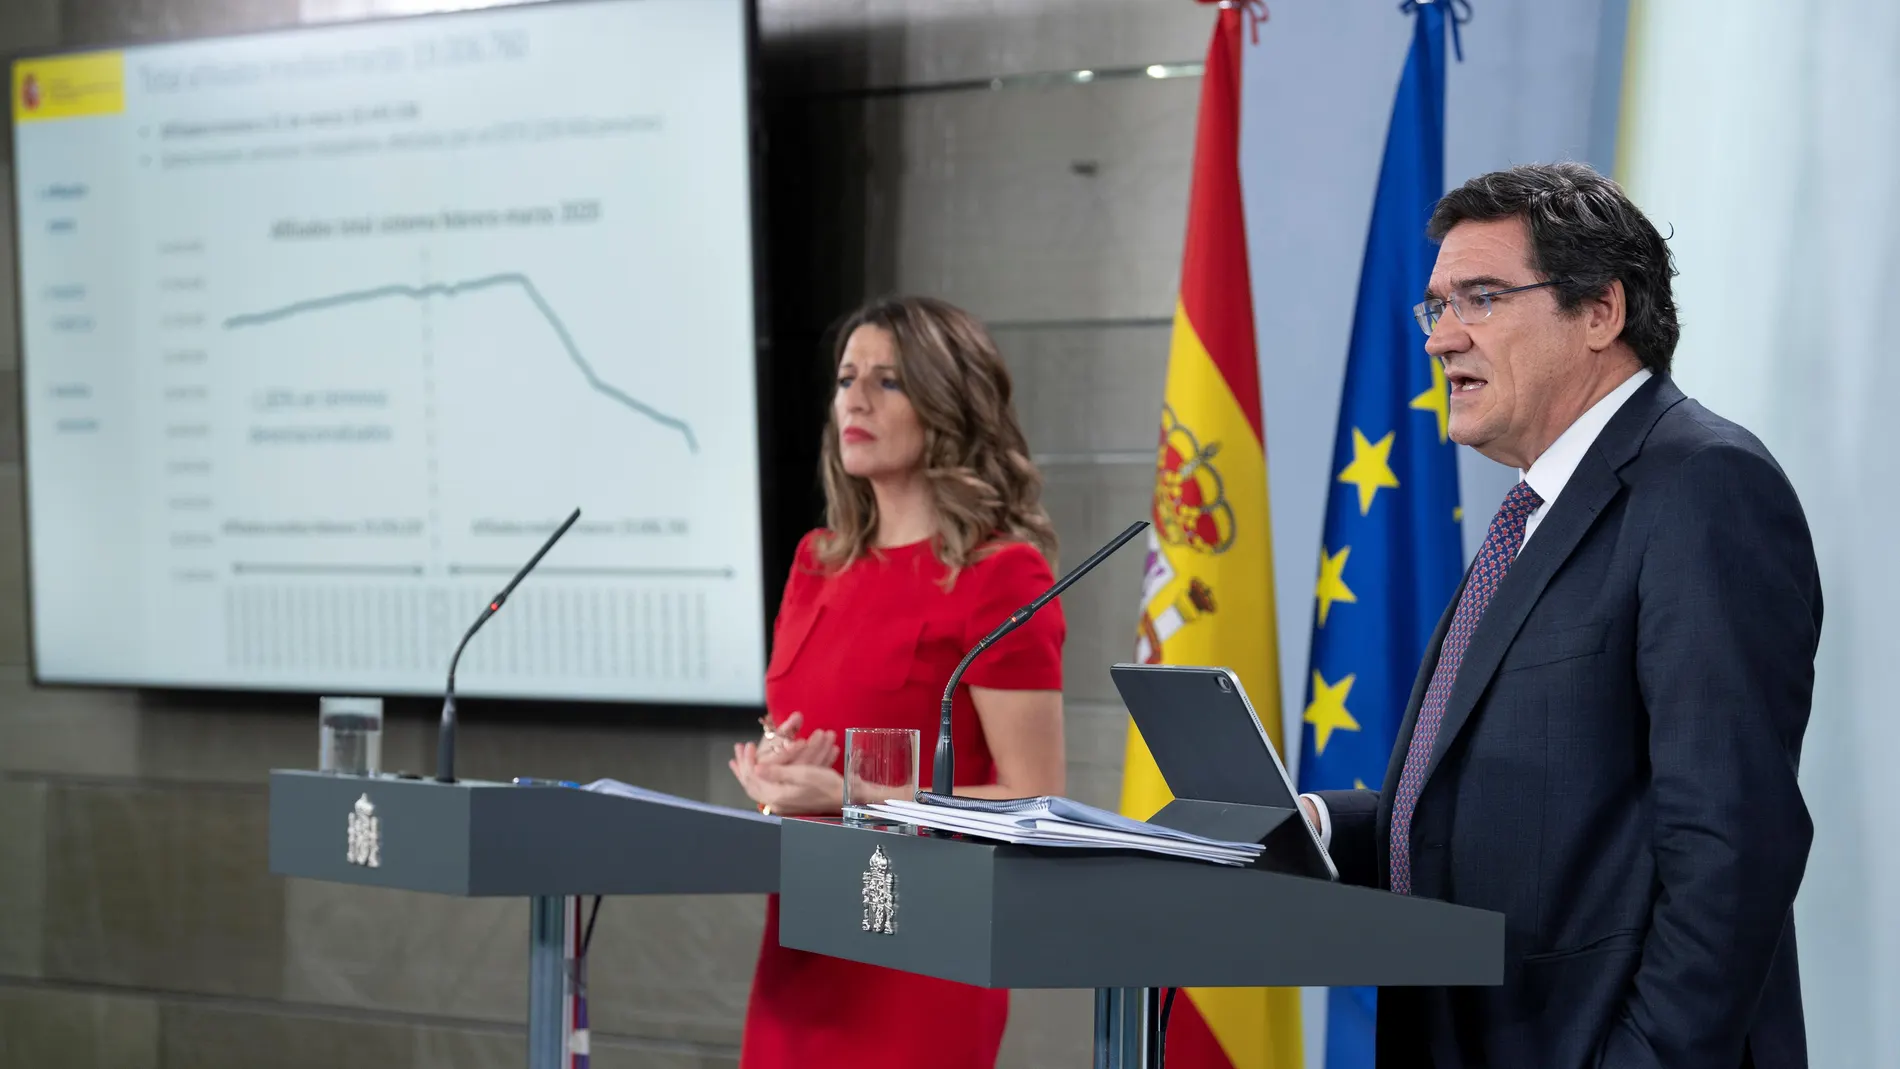 La ministra de Trabajo, Yolanda Díaz, y el ministro de Seguridad Social, José Luis Escrivá